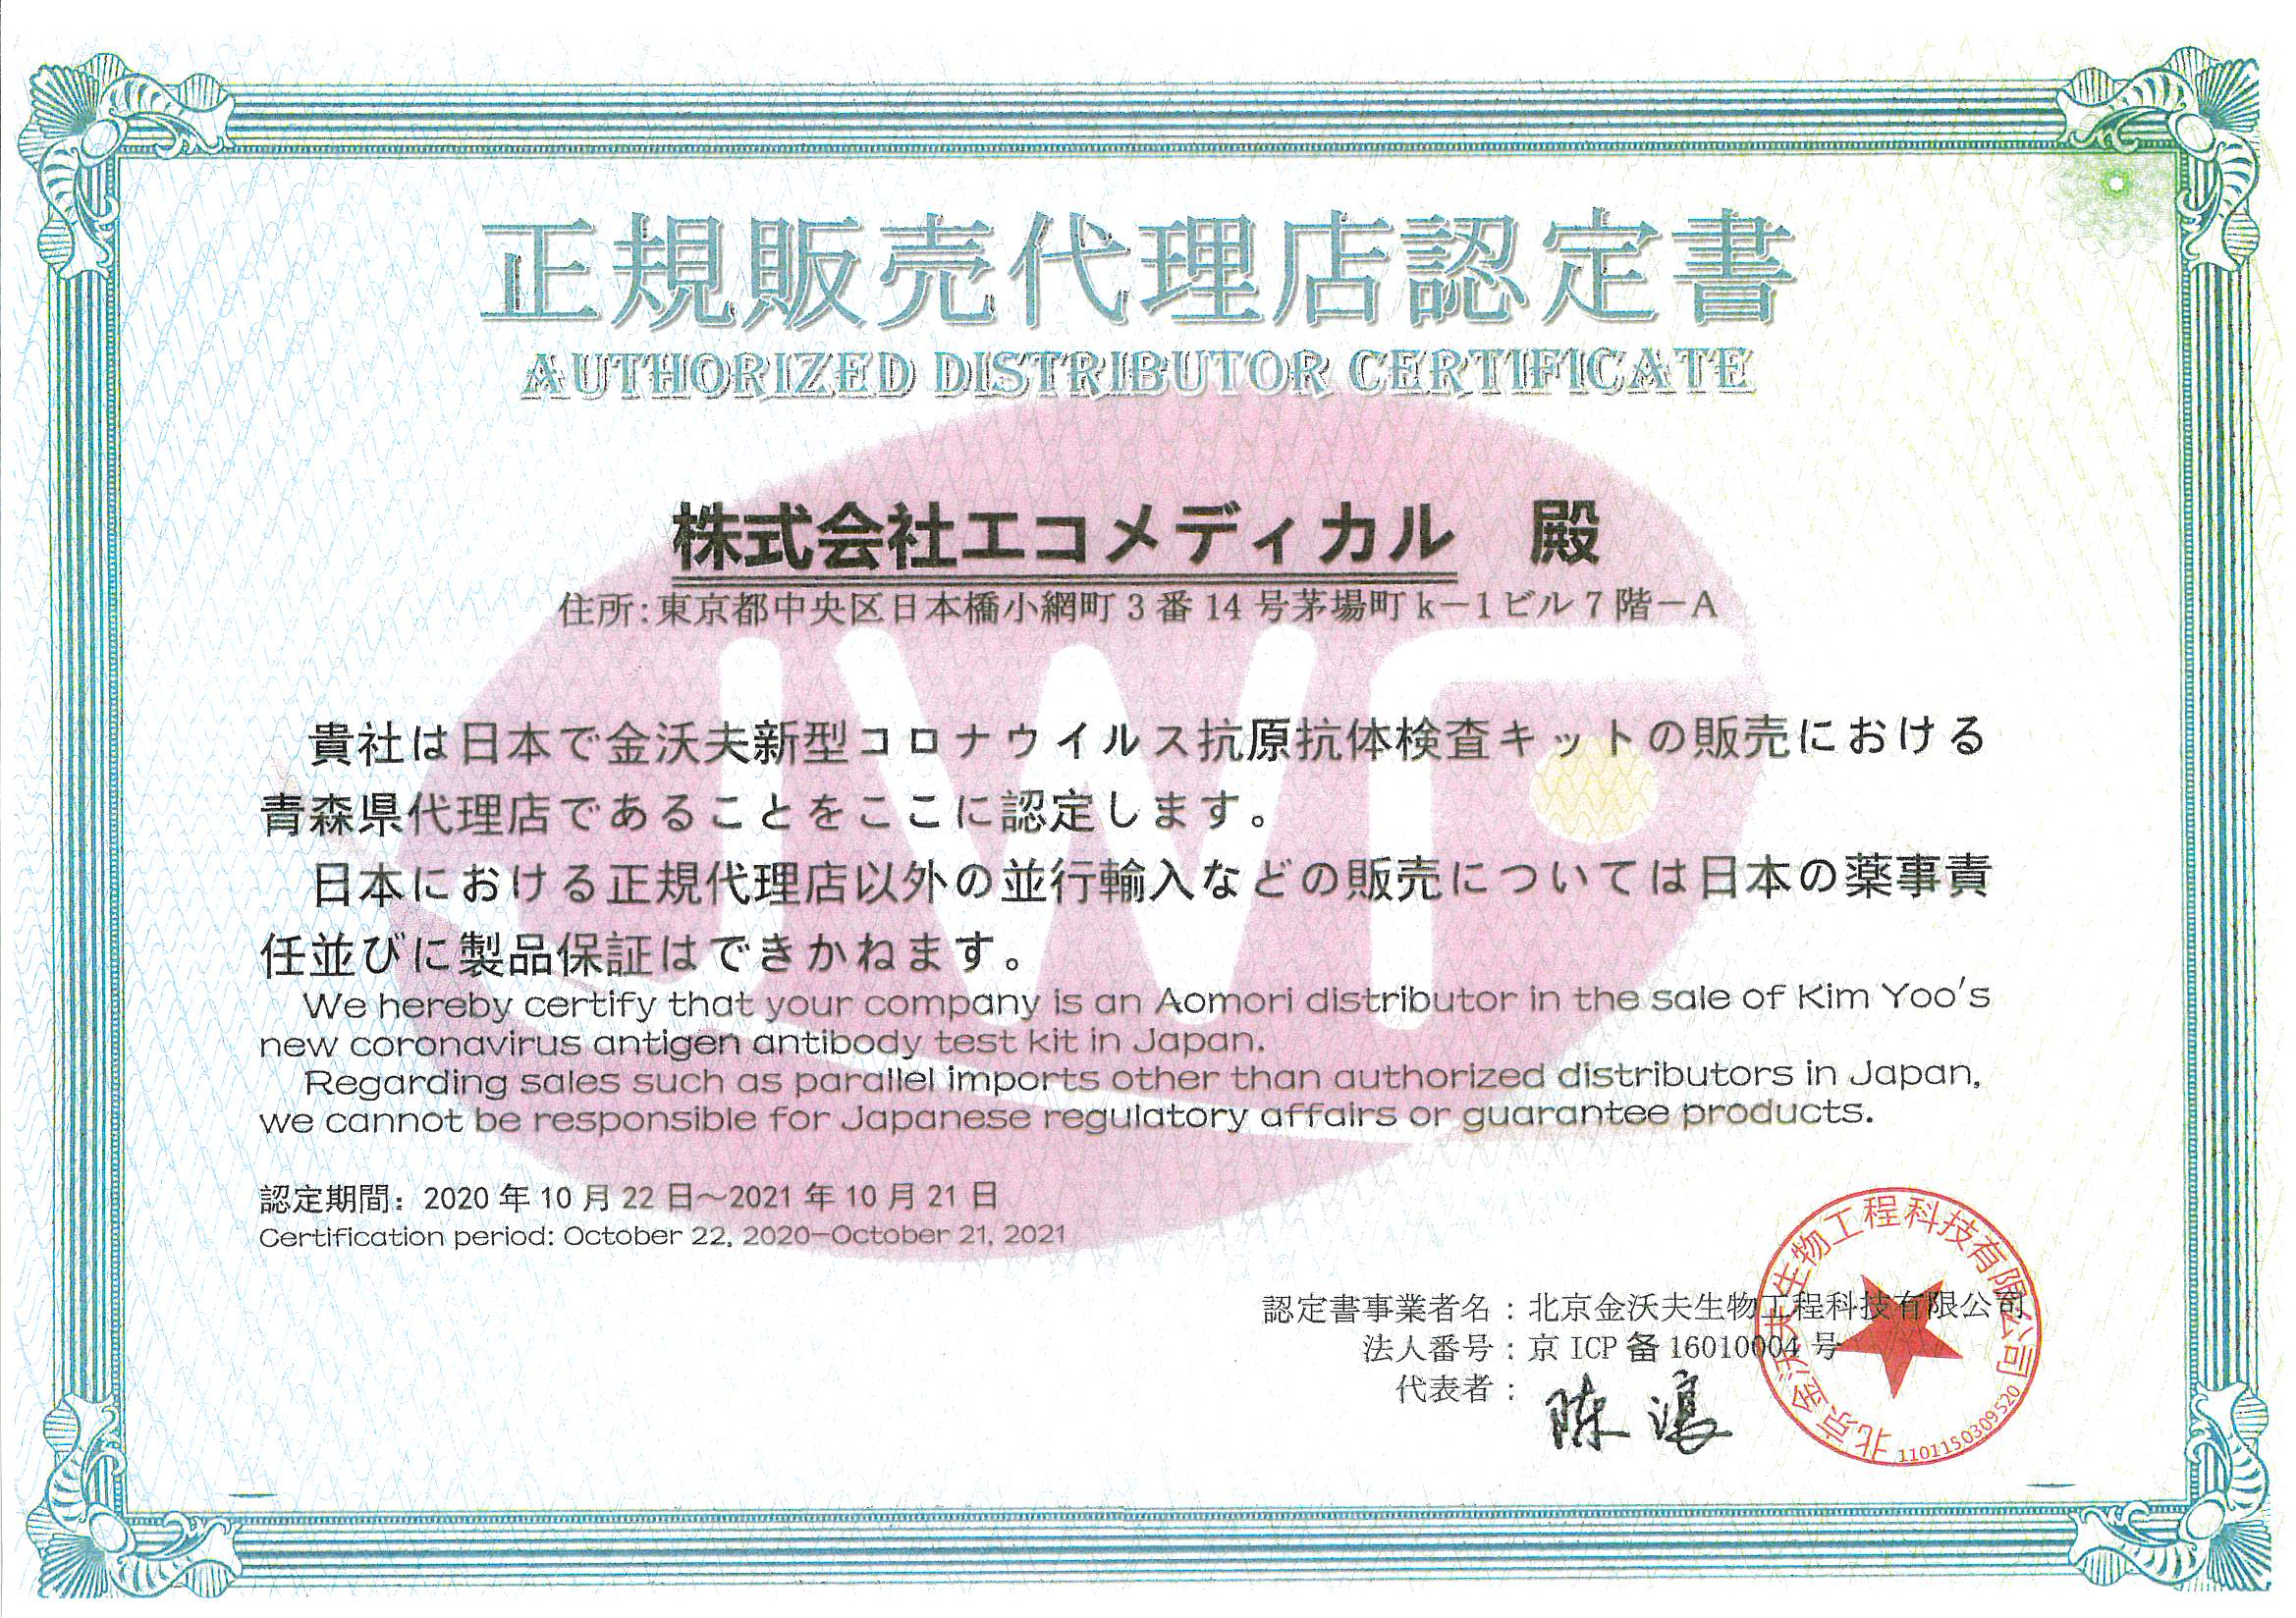 株式会社エコメディカルは、Jinwofu社より認証を受けた、青森県内唯一の正規代理店です。